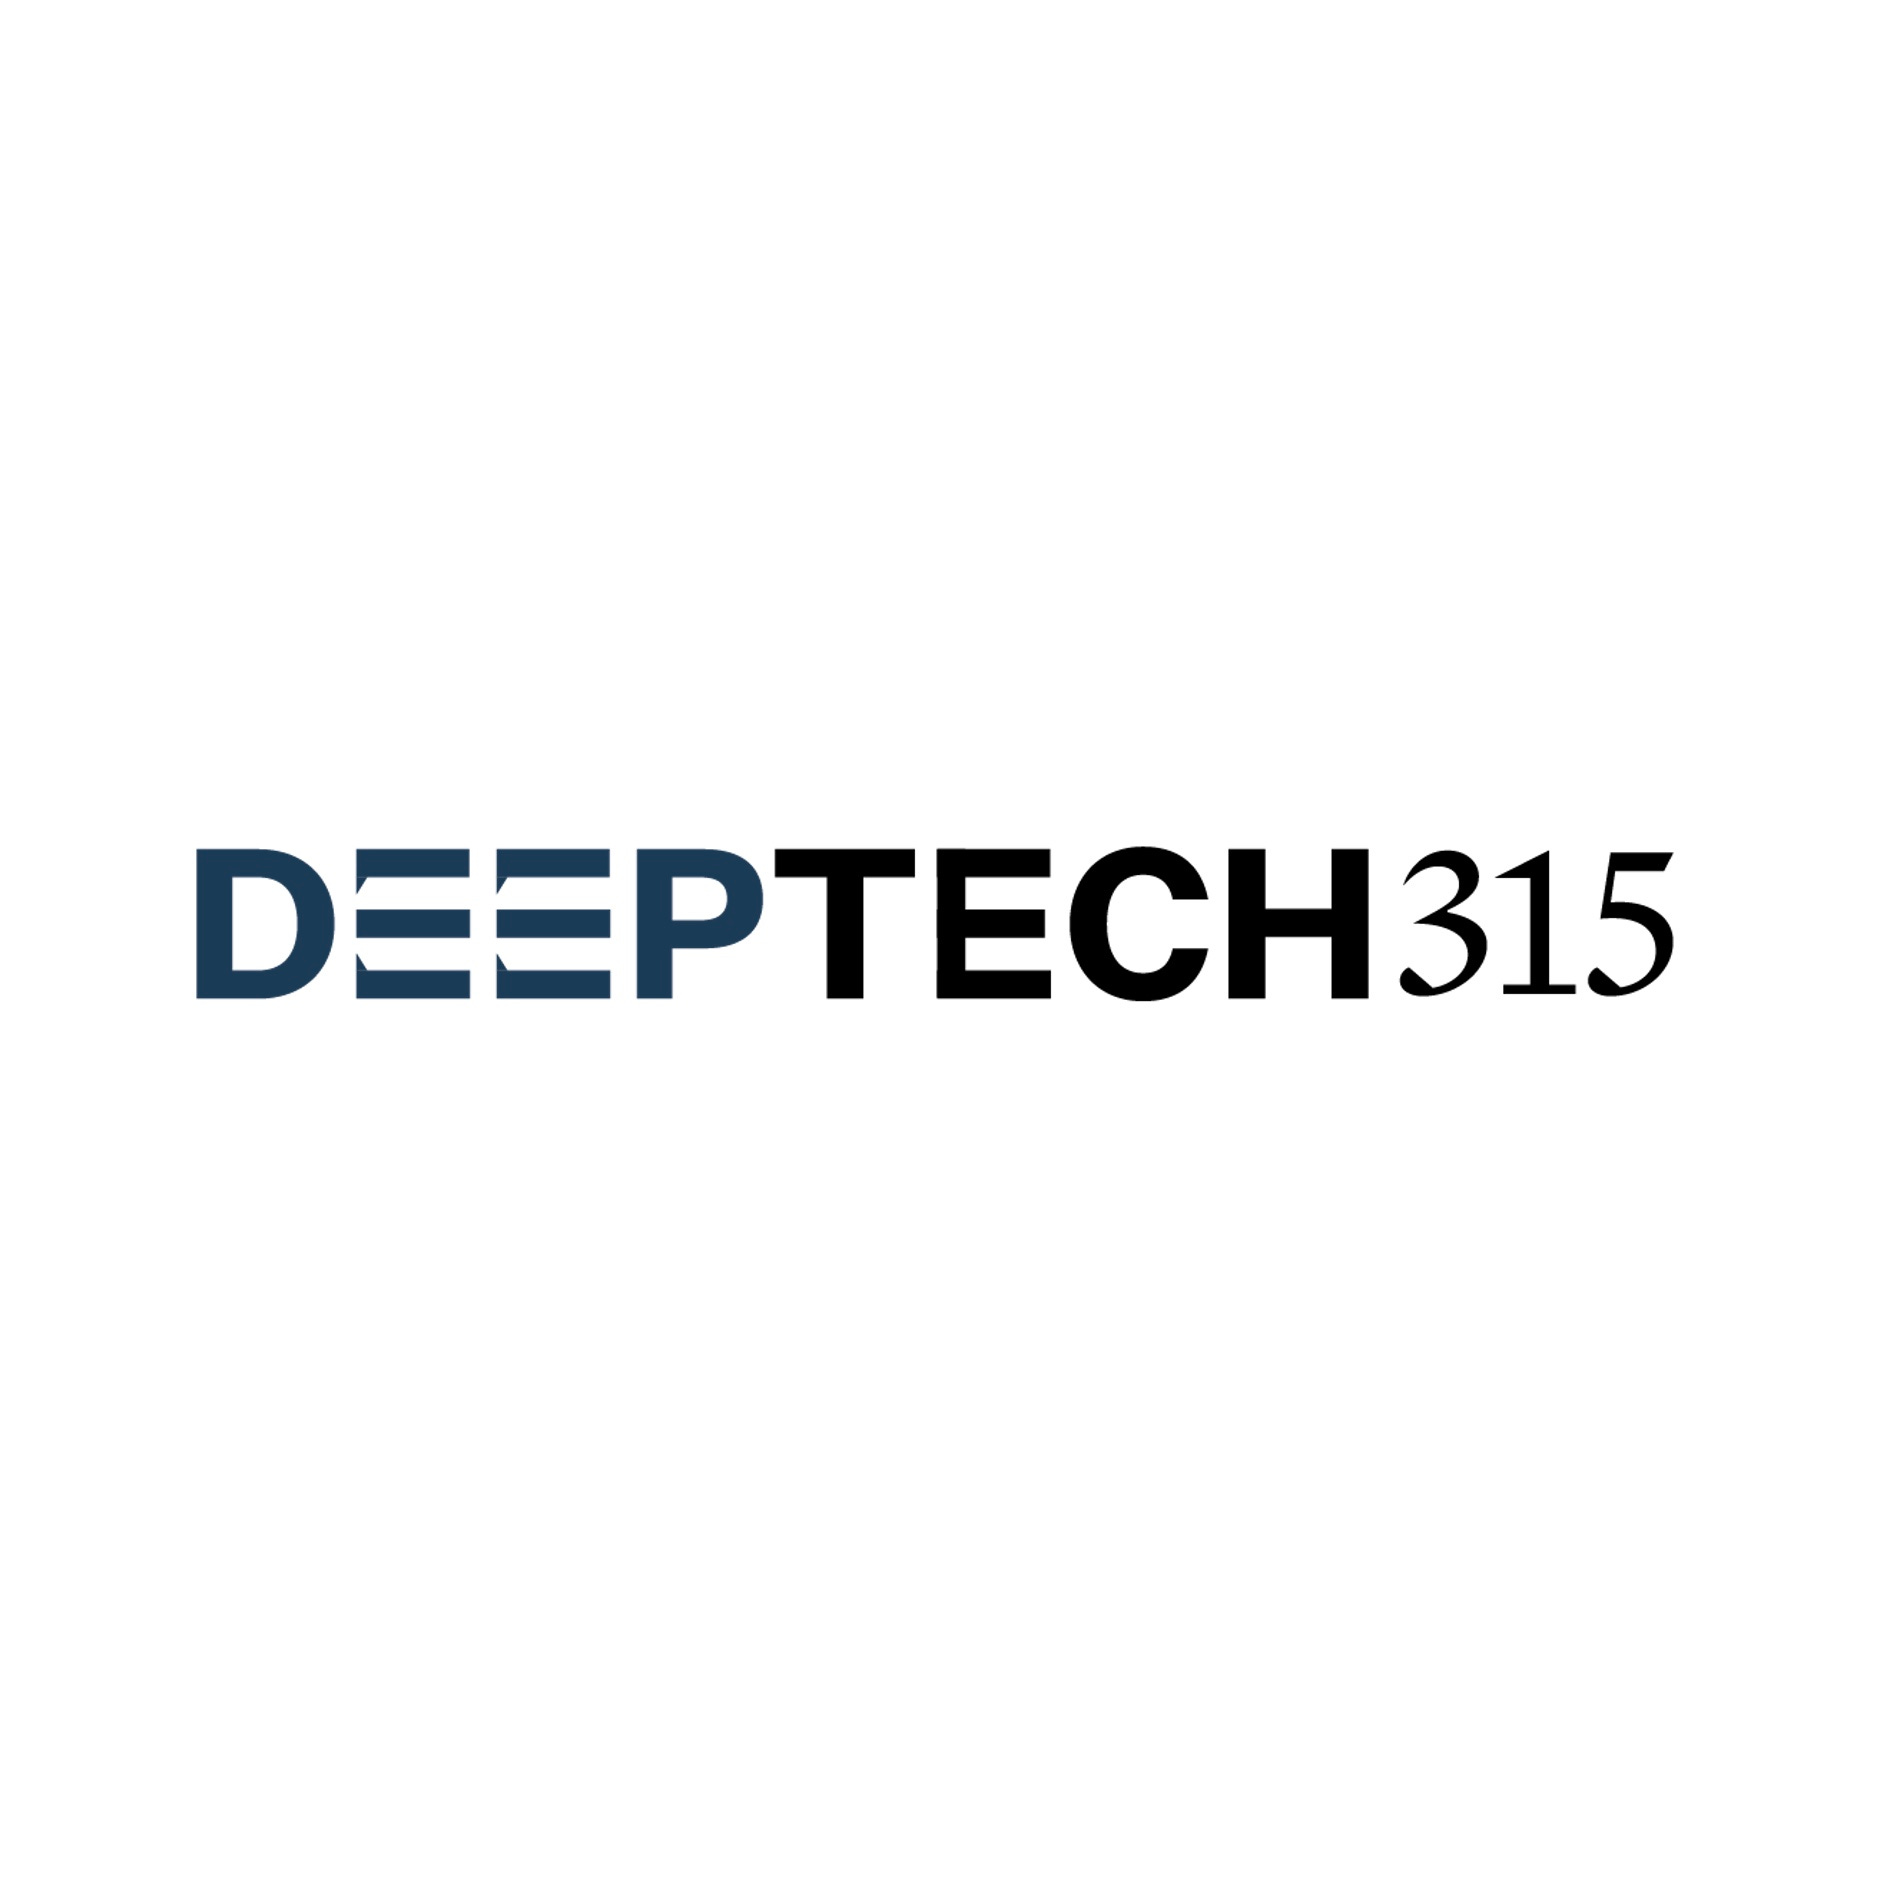 DeepTech315: Nvidia / AI Dev Days / Robotaxi Predictions